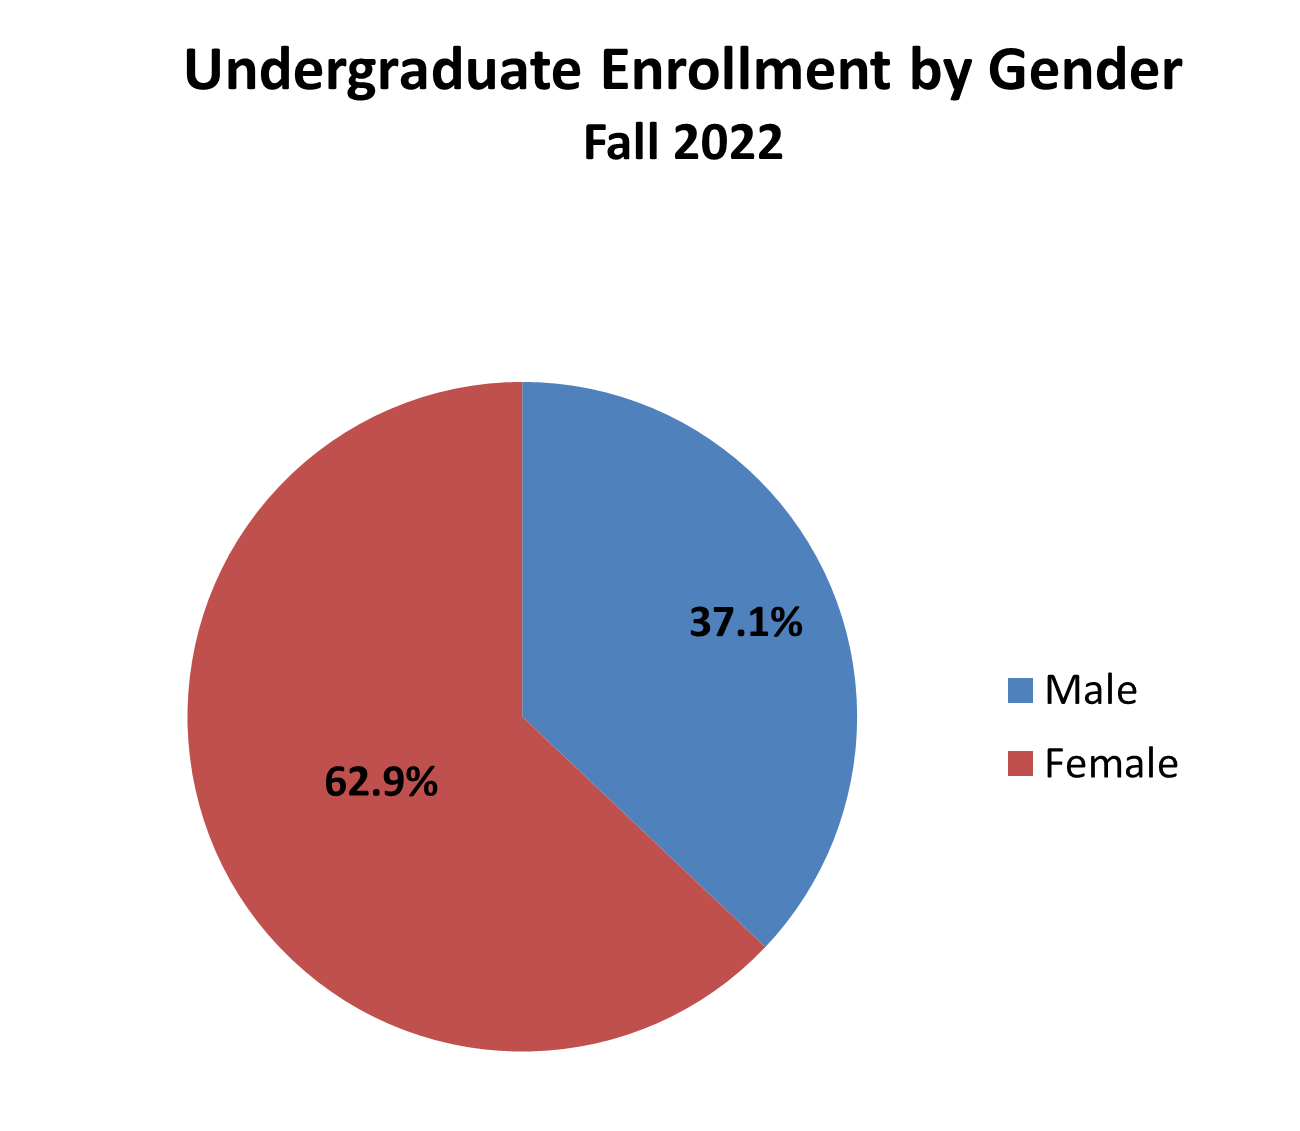 Undergradate enrollment by gender pie chart